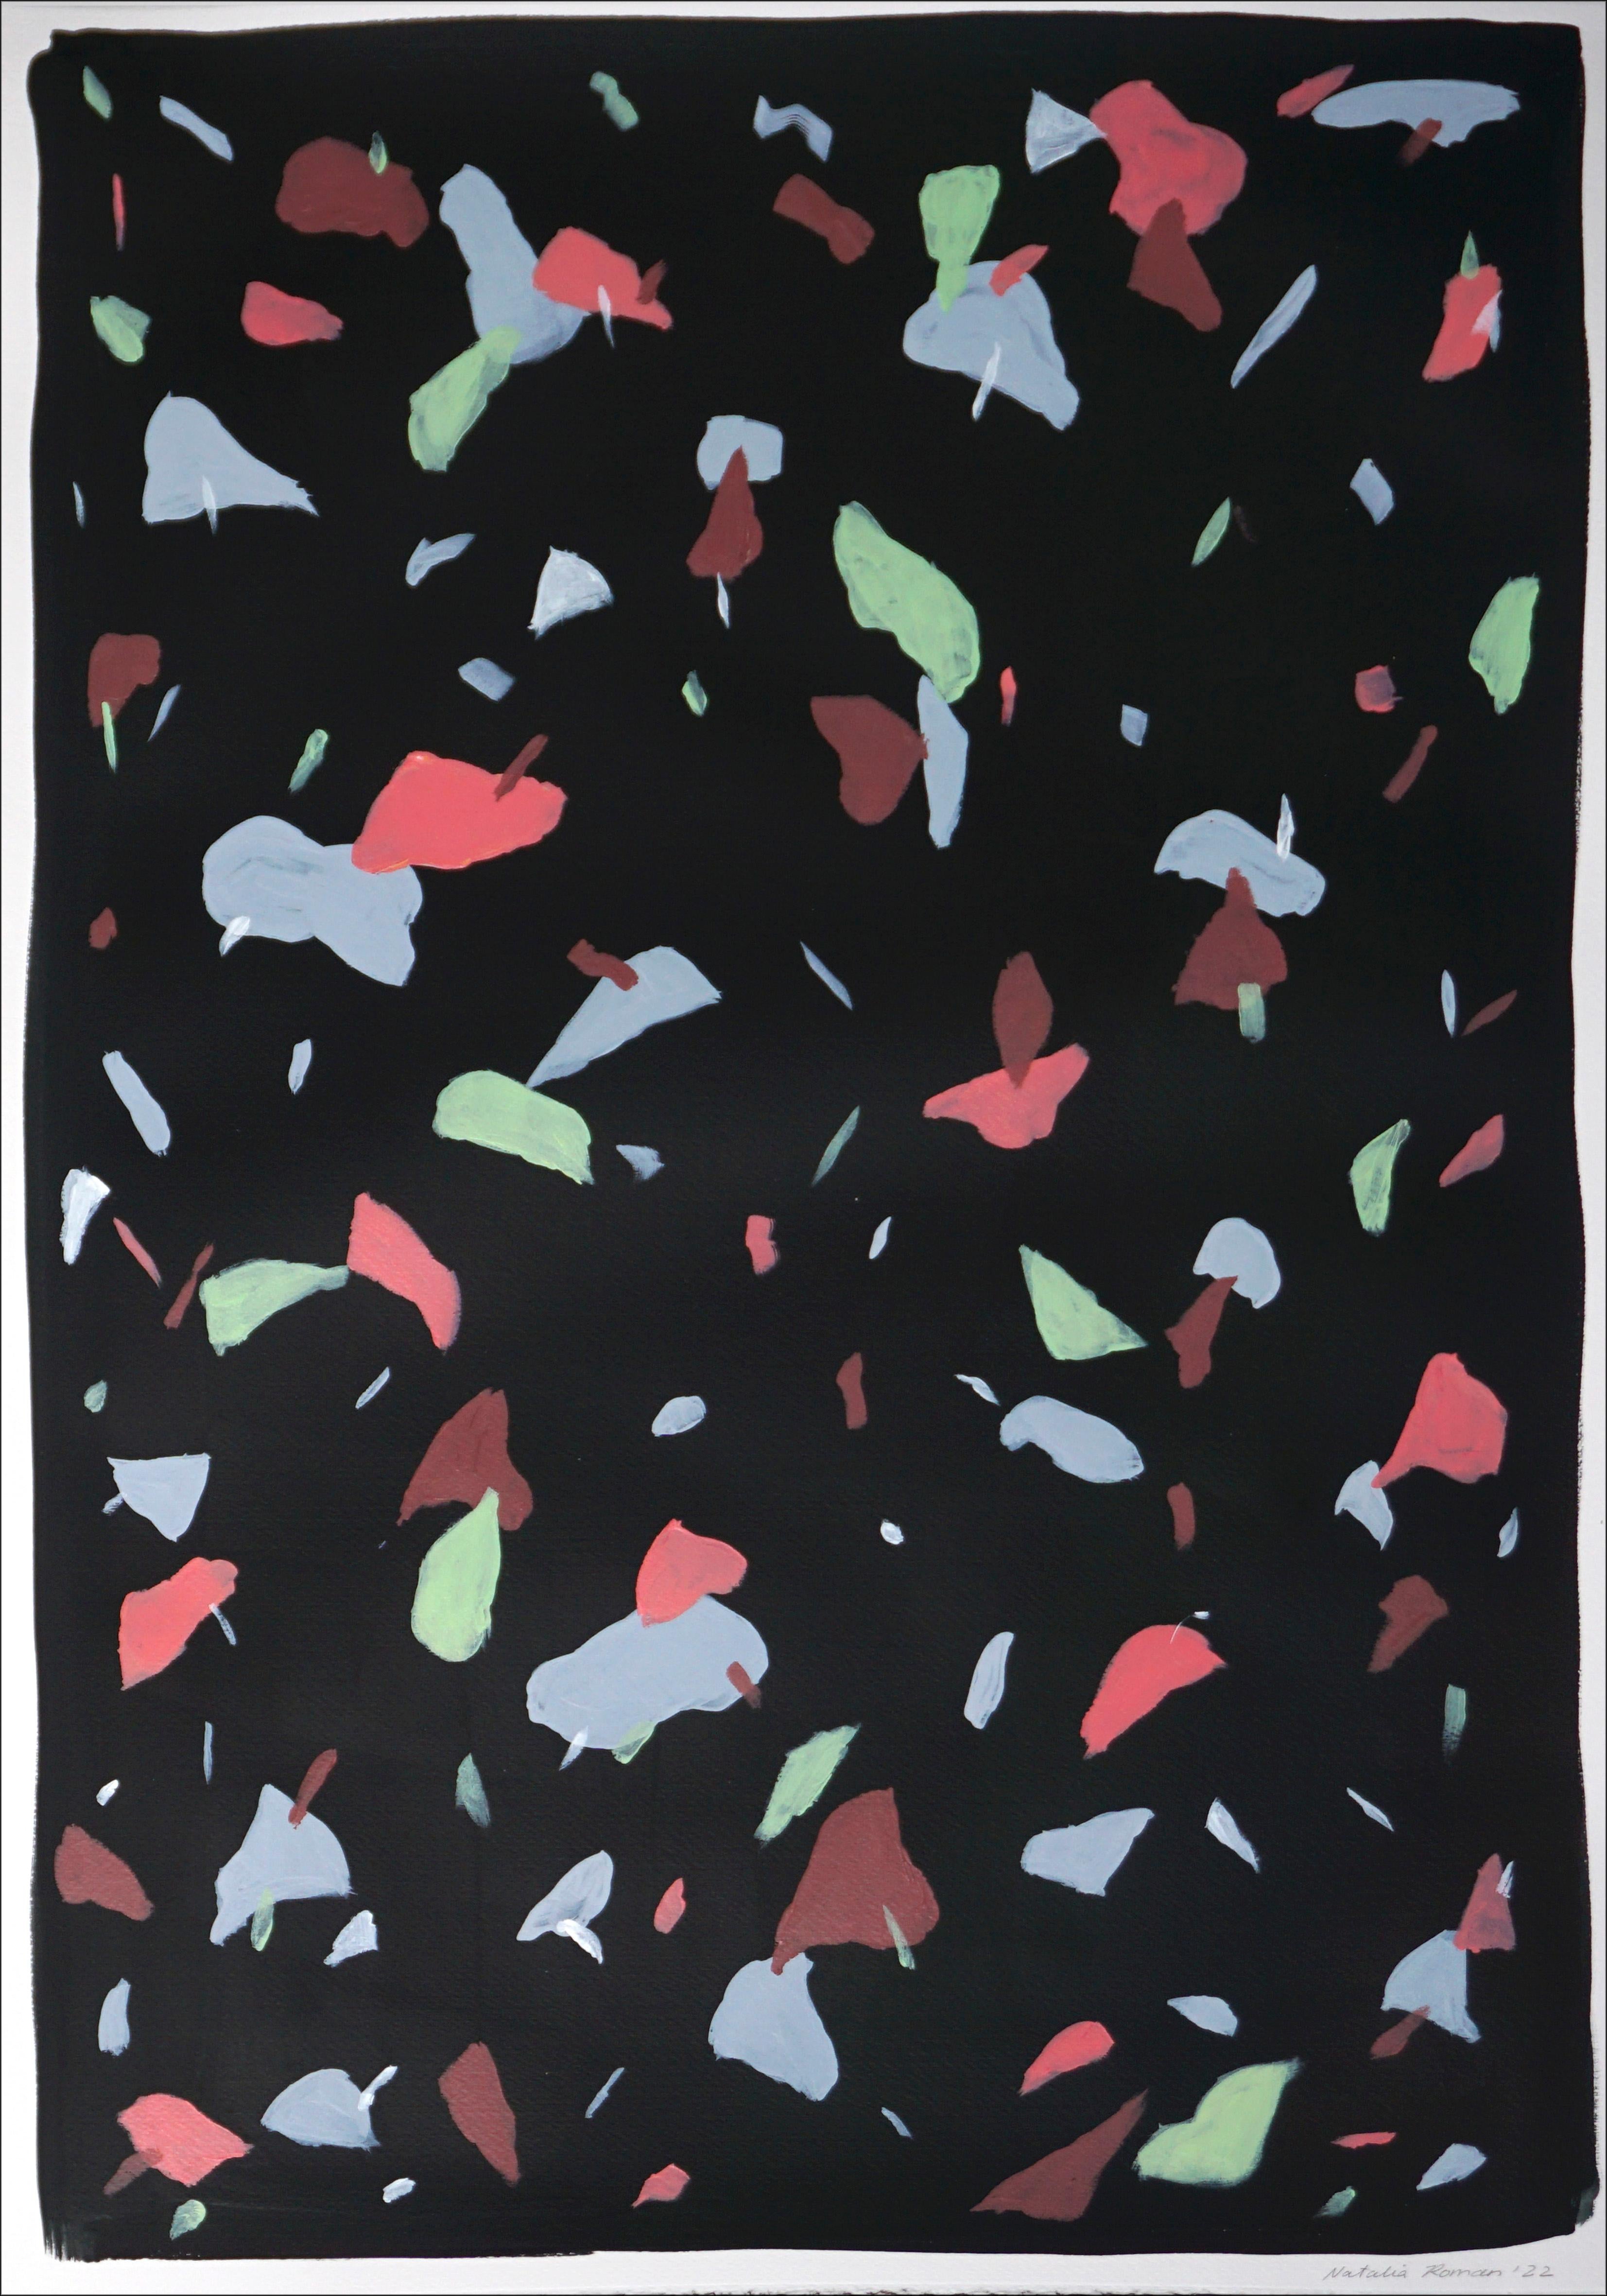 Diese Serie handgemalter Acrylbilder von Natalia Roman ist von den Farben und Texturen italienischer Terrazzokacheln inspiriert. Die entstandenen Muster kombinieren eine Vielzahl von lebhaften Farben im Vordergrund mit subtilen Hintergrundtönen, die